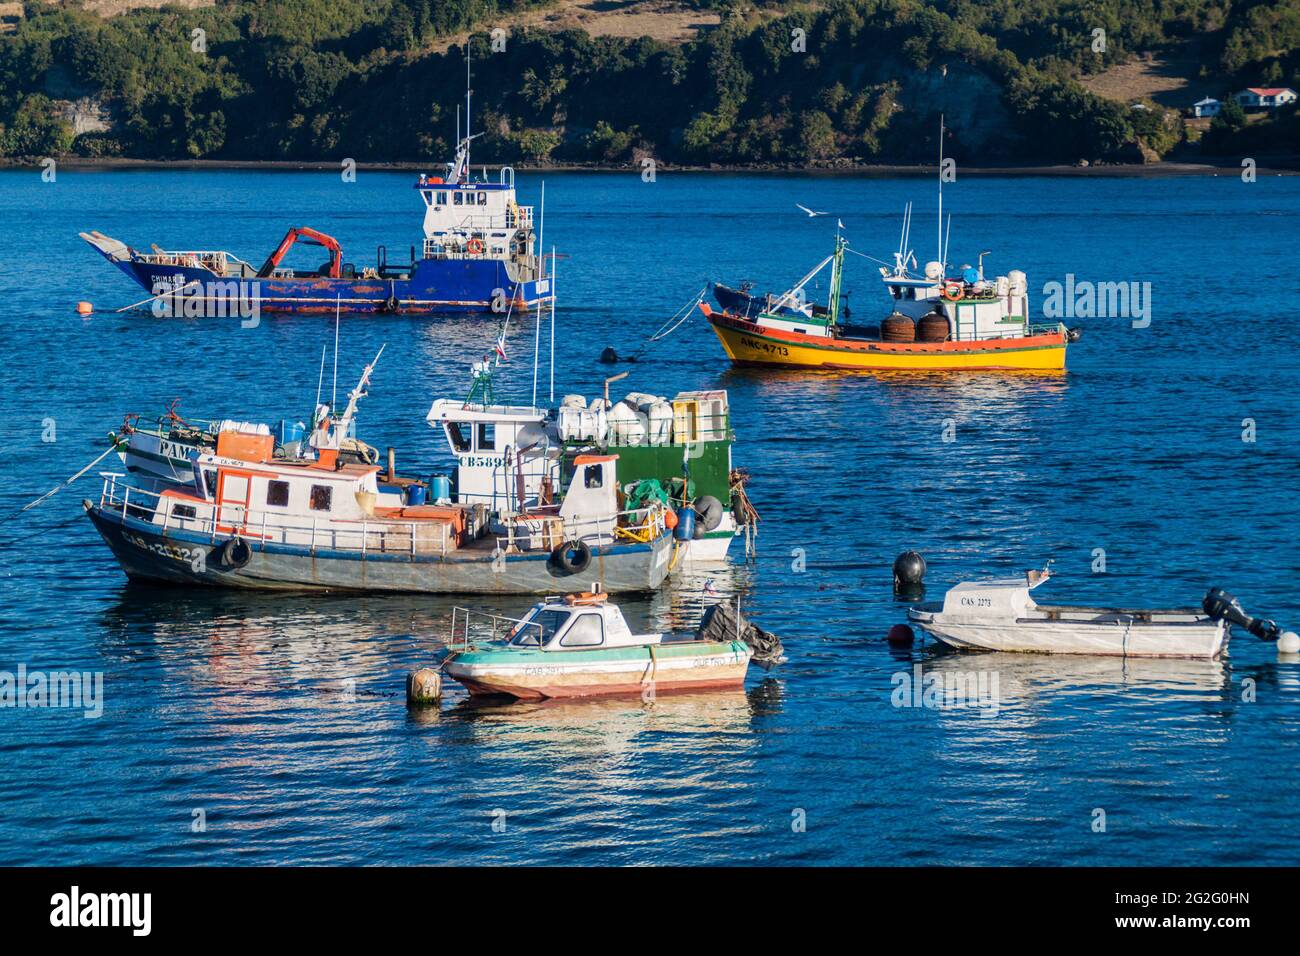 DALCAHUE, CHILE - MARCH 21, 2015: Fishing boats in Dalcahue village, Chiloe island, Chile Stock Photo